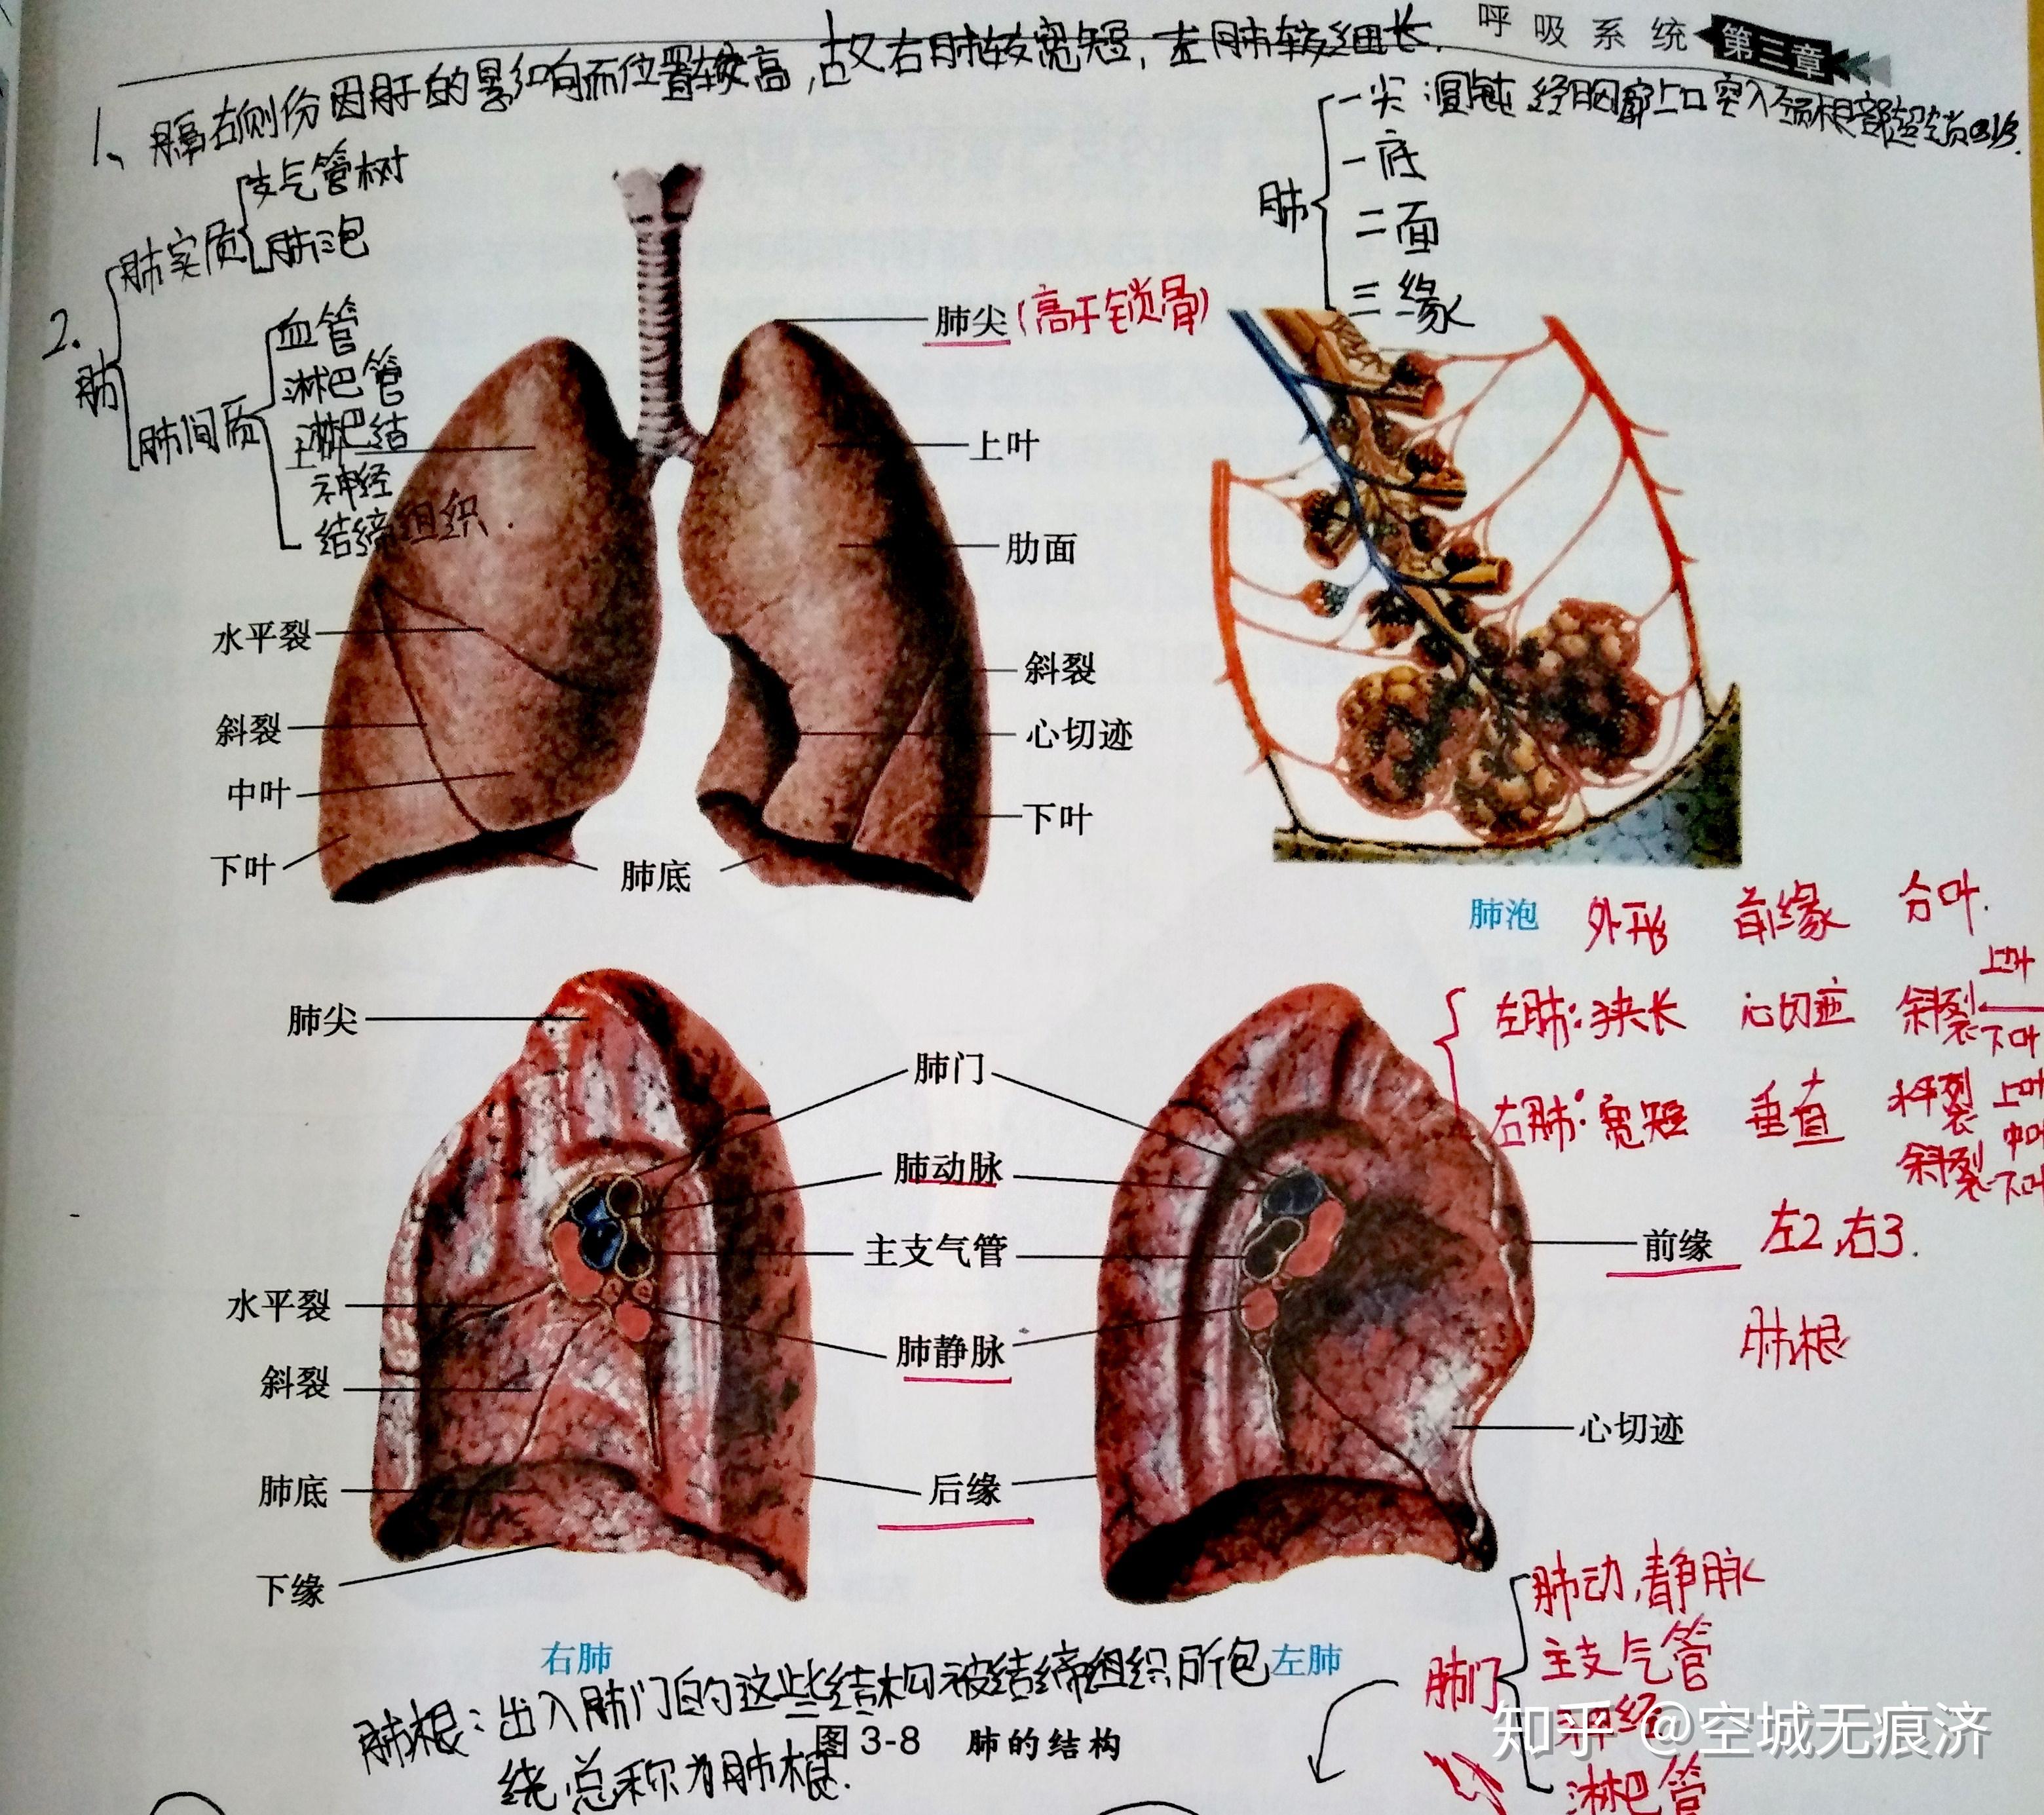 解剖收藏 | 肺段段间平面解剖学实质_组织